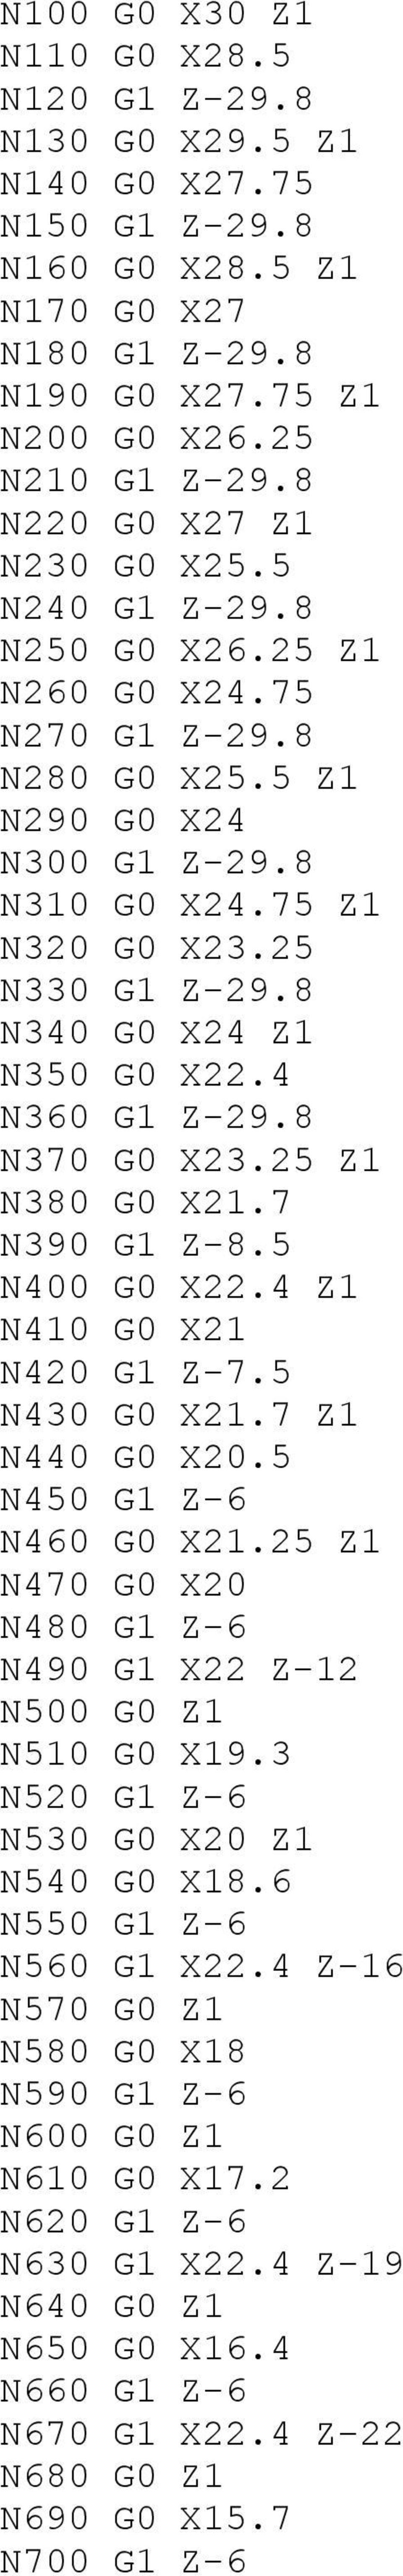 8 N340 G0 X24 Z1 N350 G0 X22.4 N360 G1 Z-29.8 N370 G0 X23.25 Z1 N380 G0 X21.7 N390 G1 Z-8.5 N400 G0 X22.4 Z1 N410 G0 X21 N420 G1 Z-7.5 N430 G0 X21.7 Z1 N440 G0 X20.5 N450 G1 Z-6 N460 G0 X21.